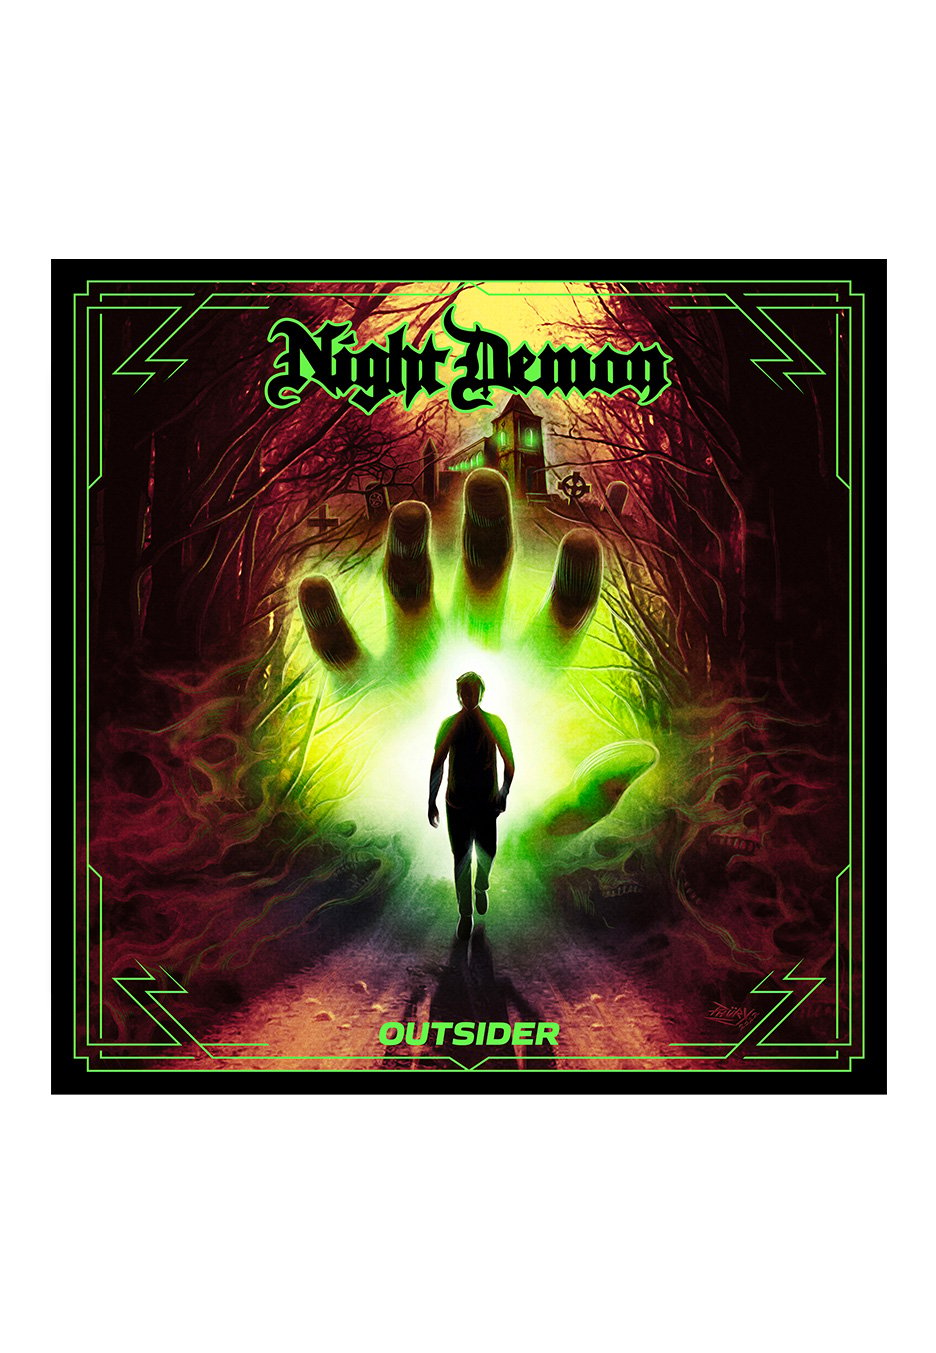 Night Demon - OUTSIDER Ltd. - Digipak CD